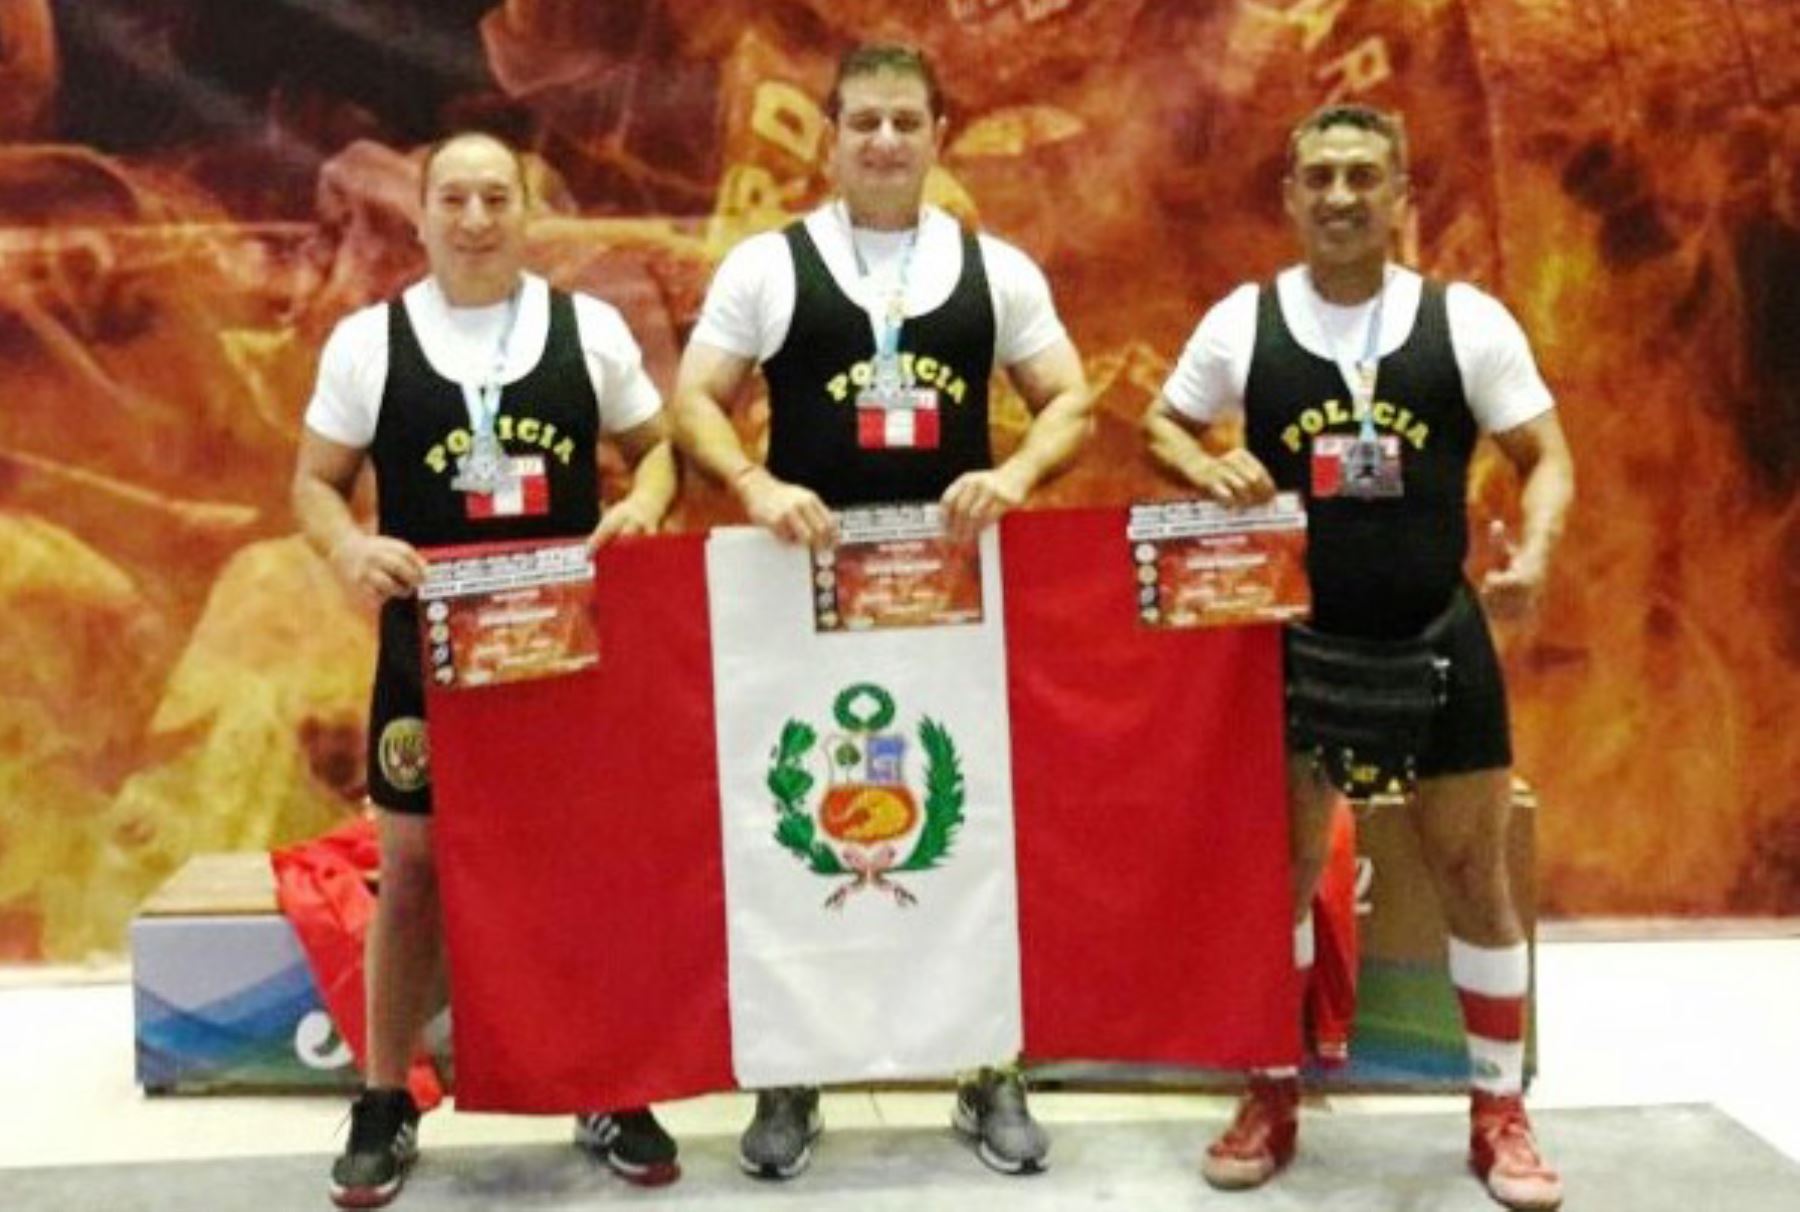 Policías peruanos logran 4 medallas de oro en Campeonato Sudamericano de Powerlifting. Foto: ANDINA/Difusión.